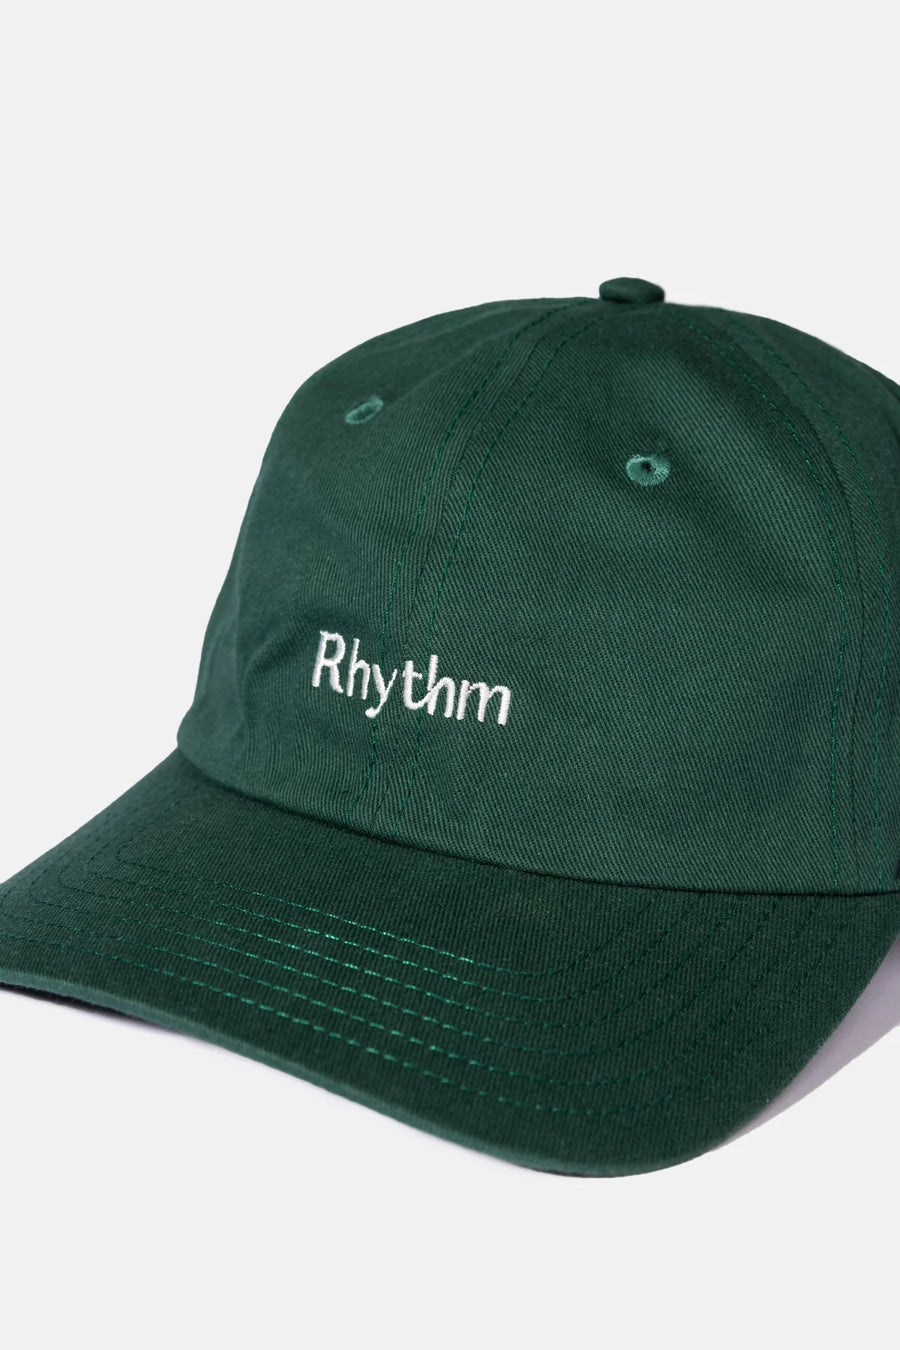 Rhythm Essential Cap